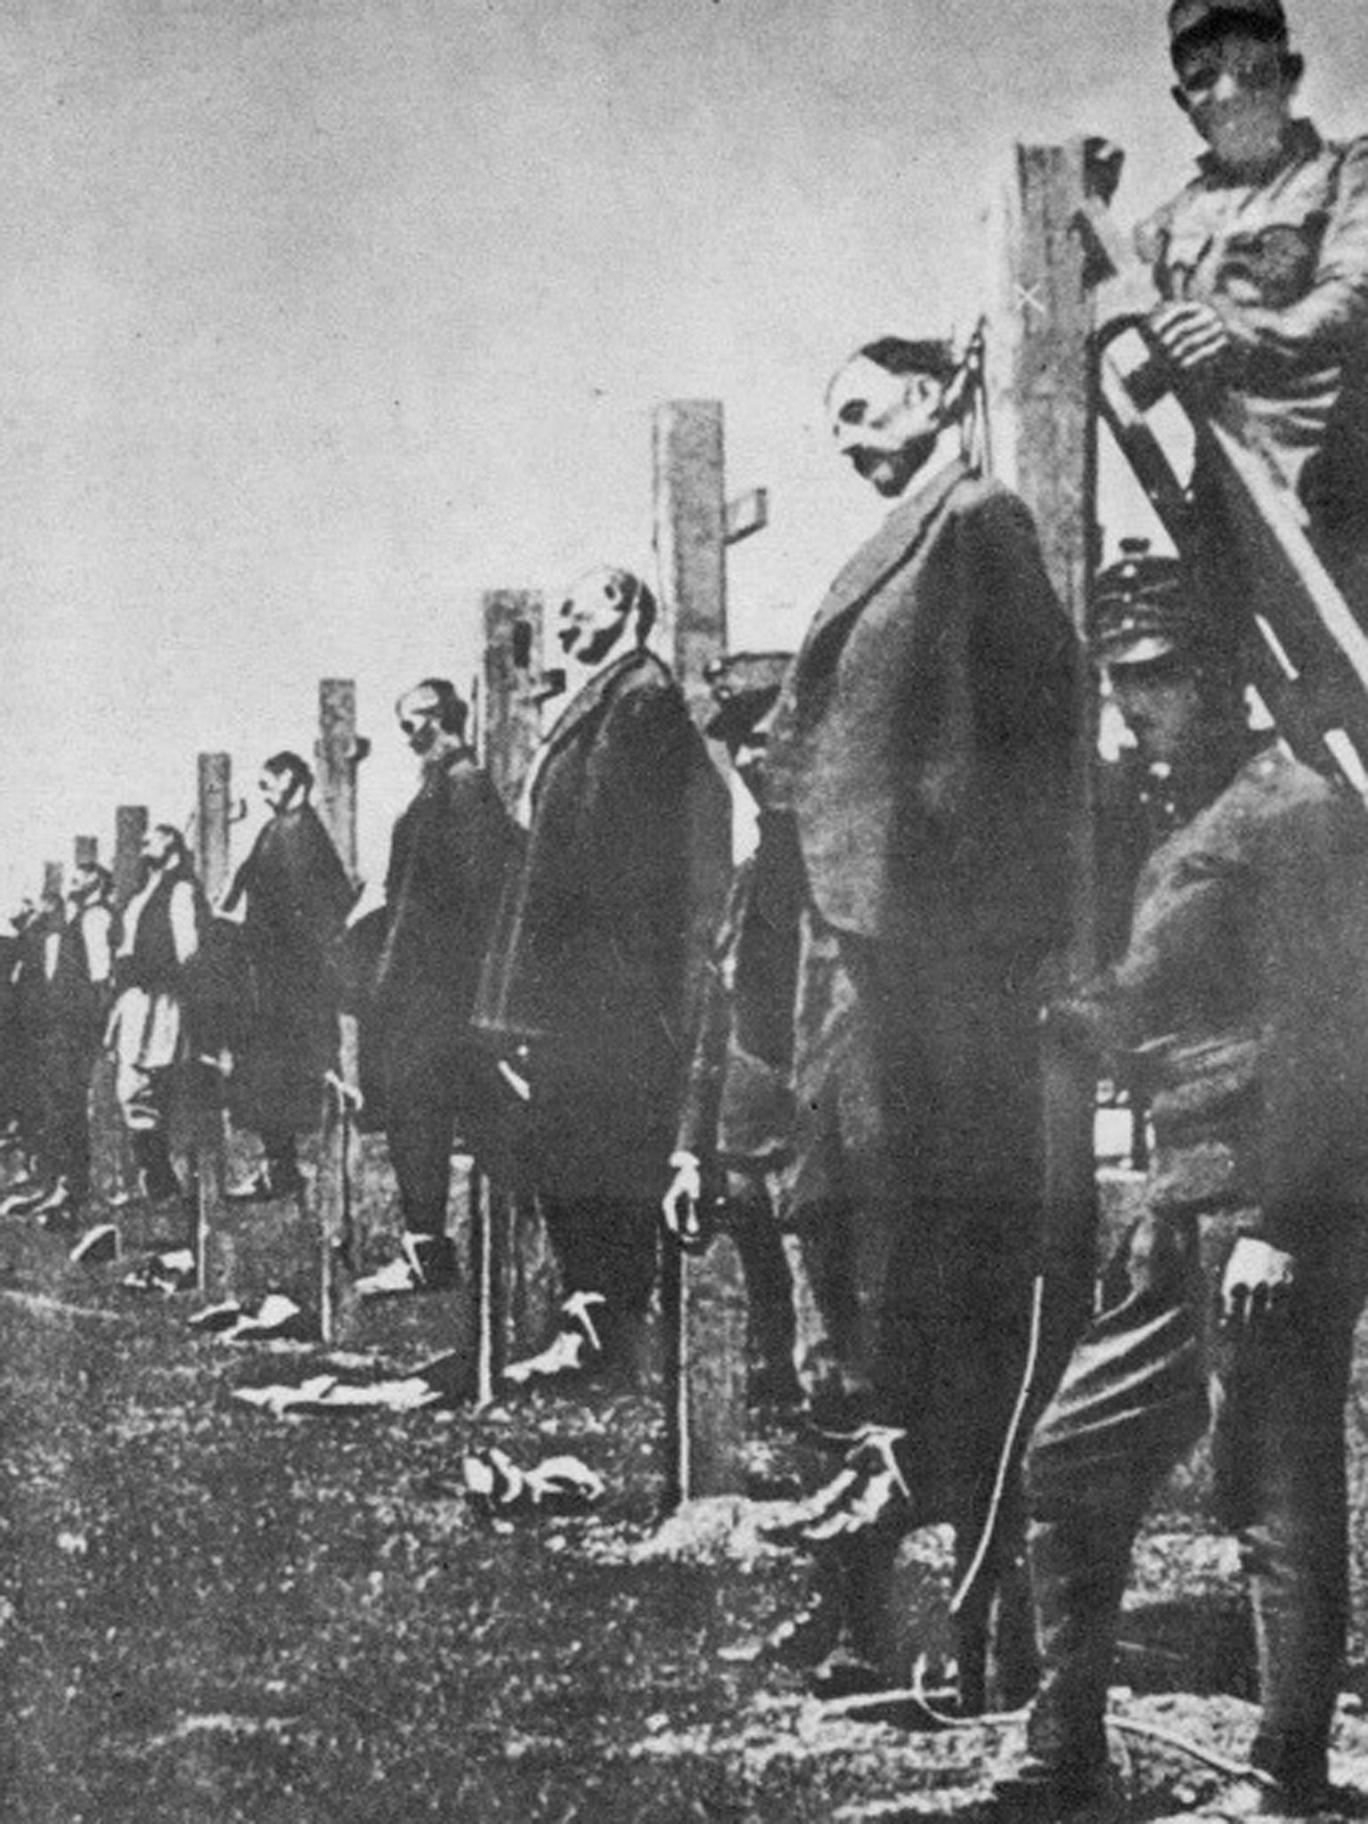 Serb civilians captured at Austrian front line, date uncertain.